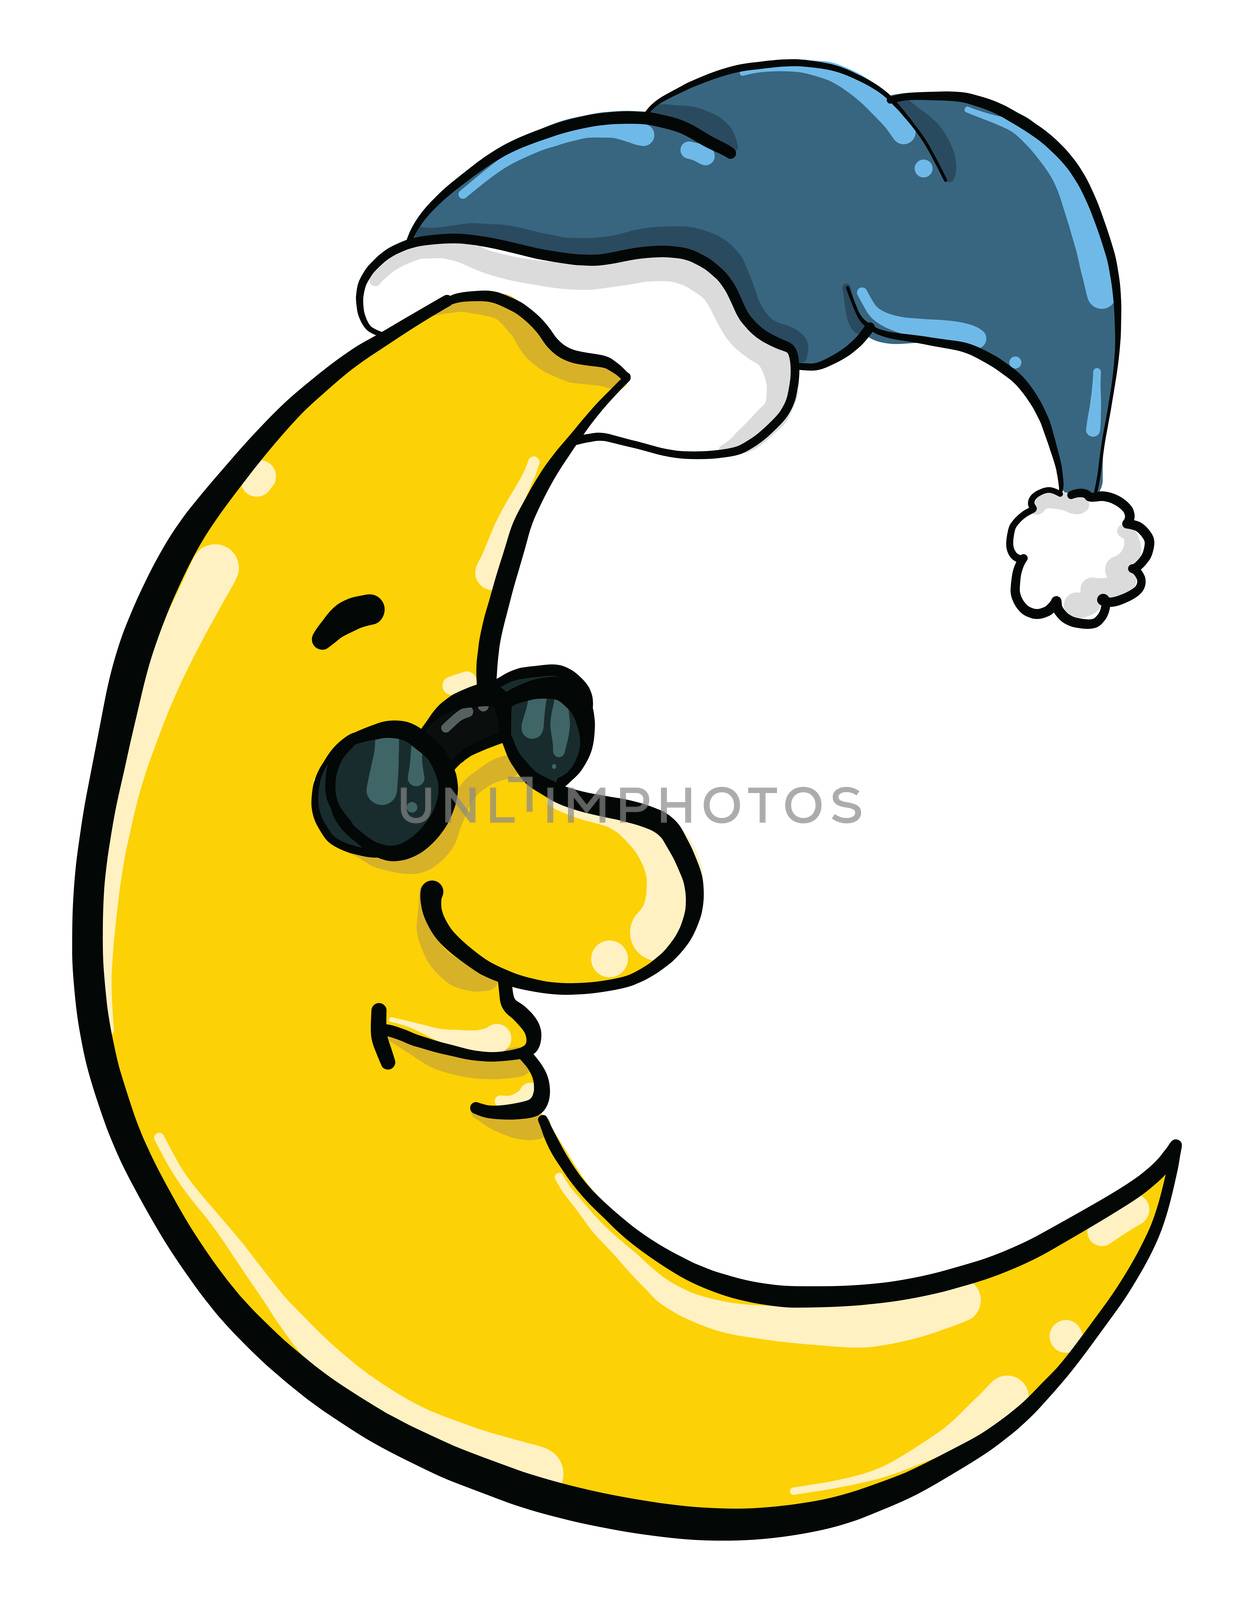 Sleepy moon , illustration, vector on white background